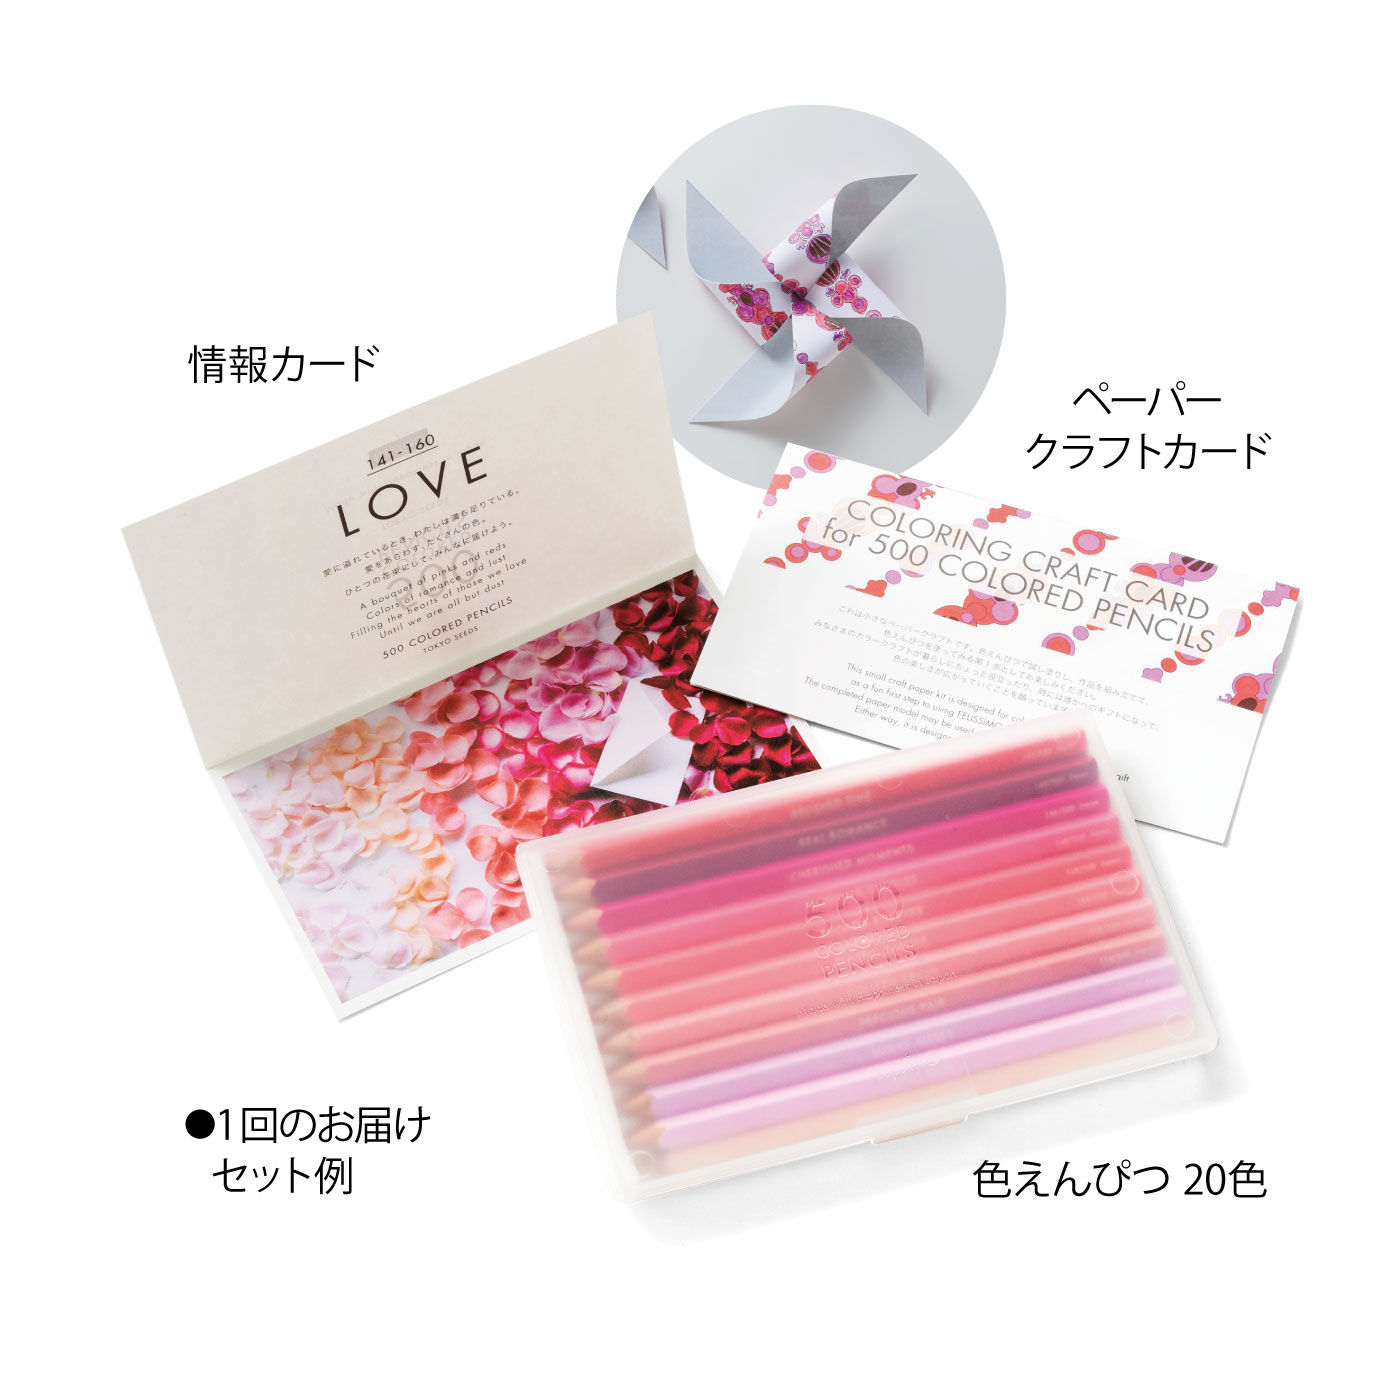 500色の色えんぴつ TOKYO SEEDS｜その他文房具・事務用品 